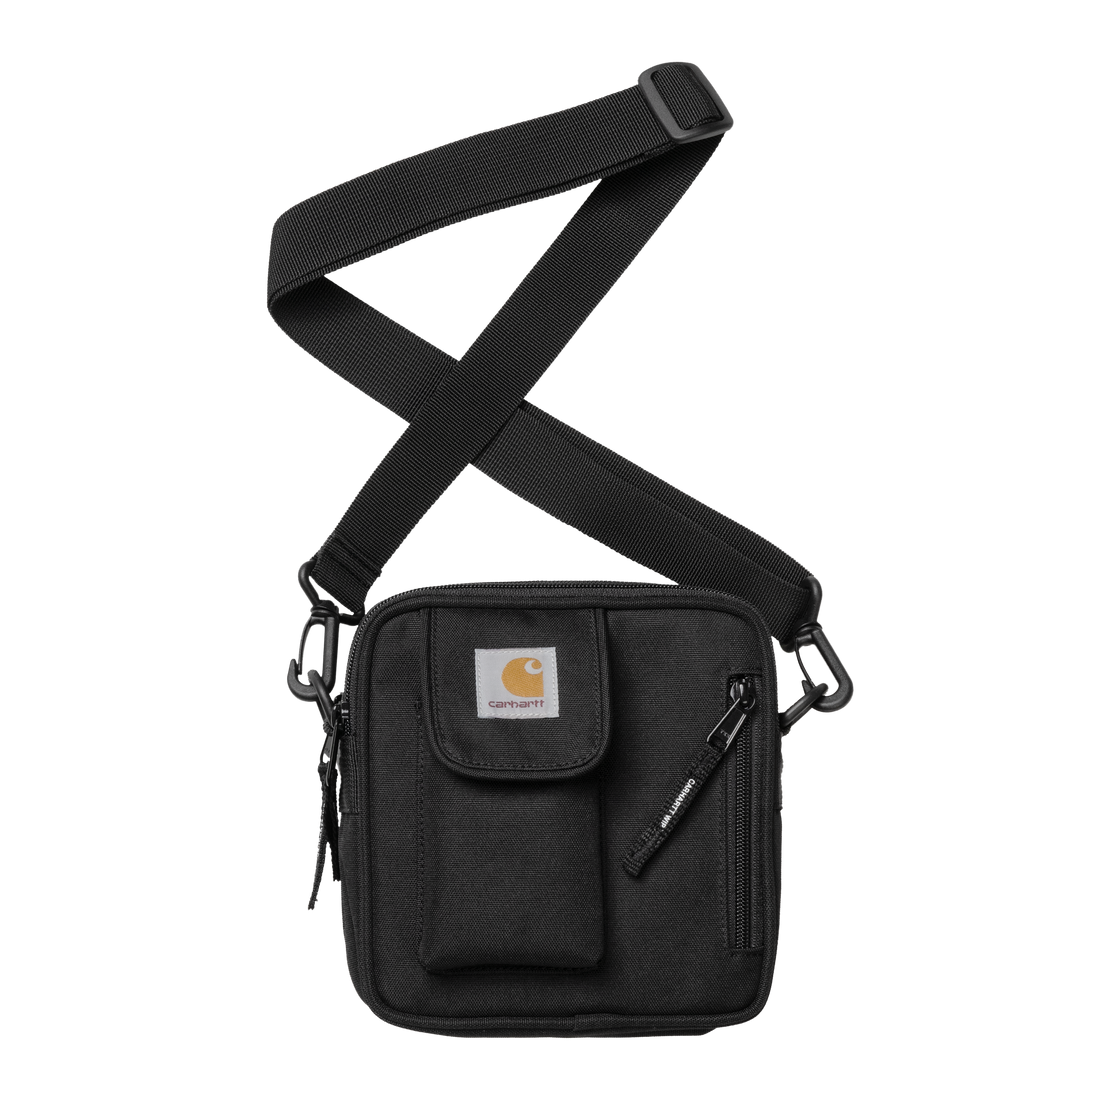 Carhartt Essentials Bag, Small Black